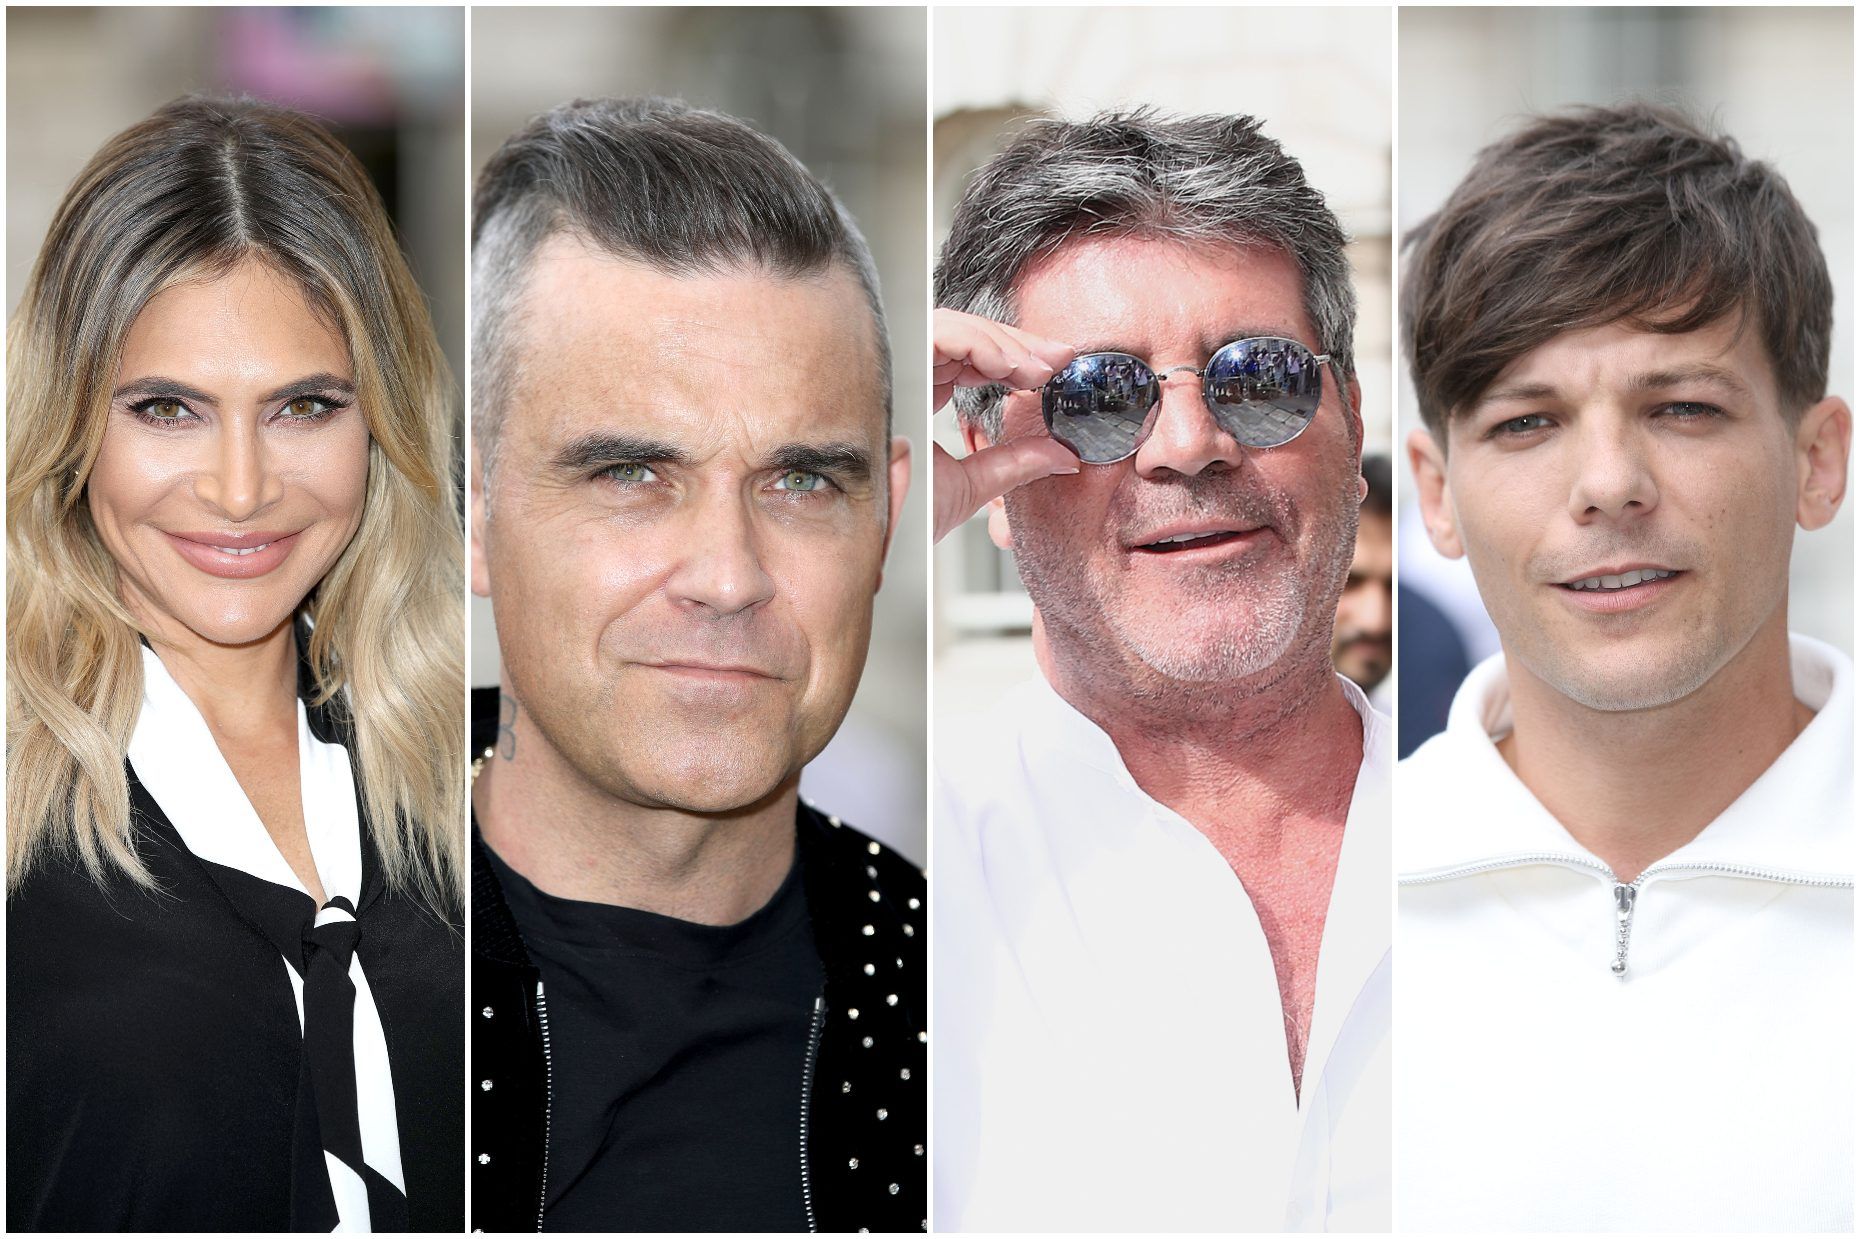 Die X Factor 2018 Jury-Aufstellung bestätigt: Robbie Williams, Ayda Field und Louis Tomlinson schließen sich Simon Cowell auf ITV an